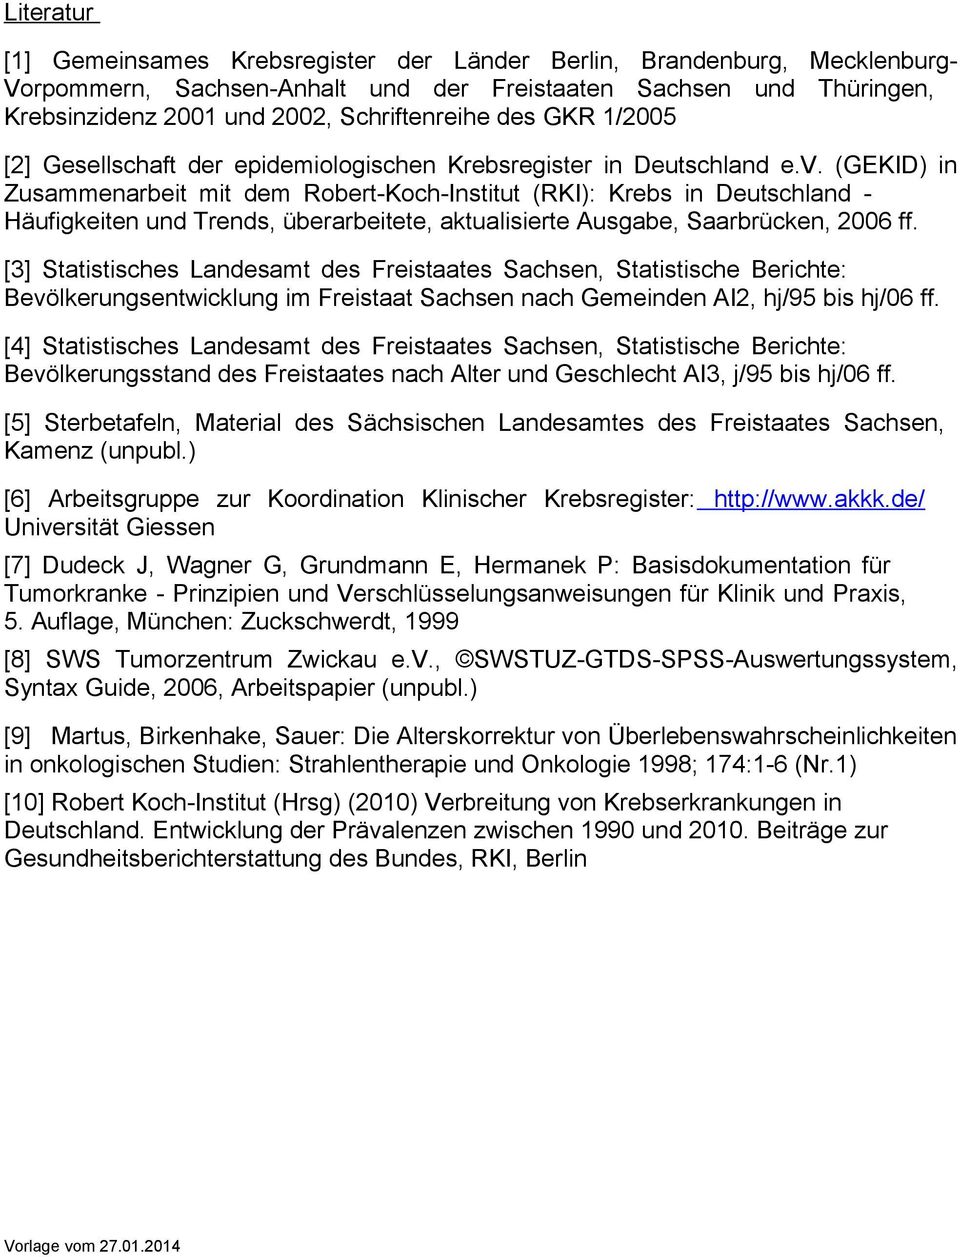 (GEKID) in Zusammenarbeit mit dem Robert-Koch-Institut (RKI): Krebs in Deutschland - Häufigkeiten und Trends, überarbeitete, aktualisierte Ausgabe, Saarbrücken, 2006 ff.